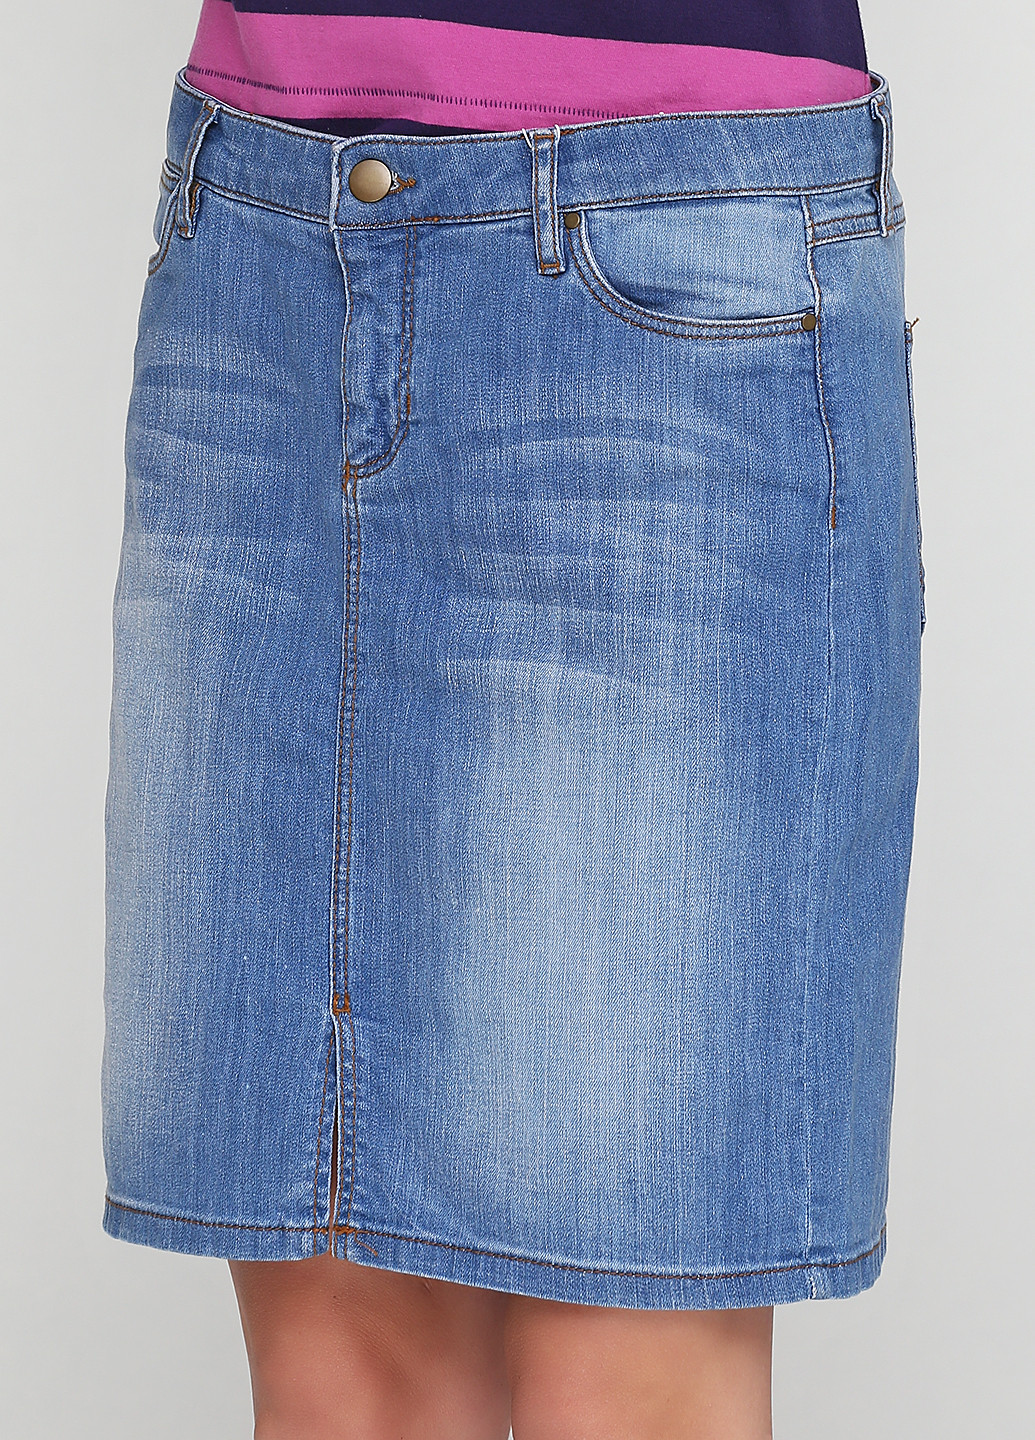 Голубая джинсовая однотонная юбка InWear